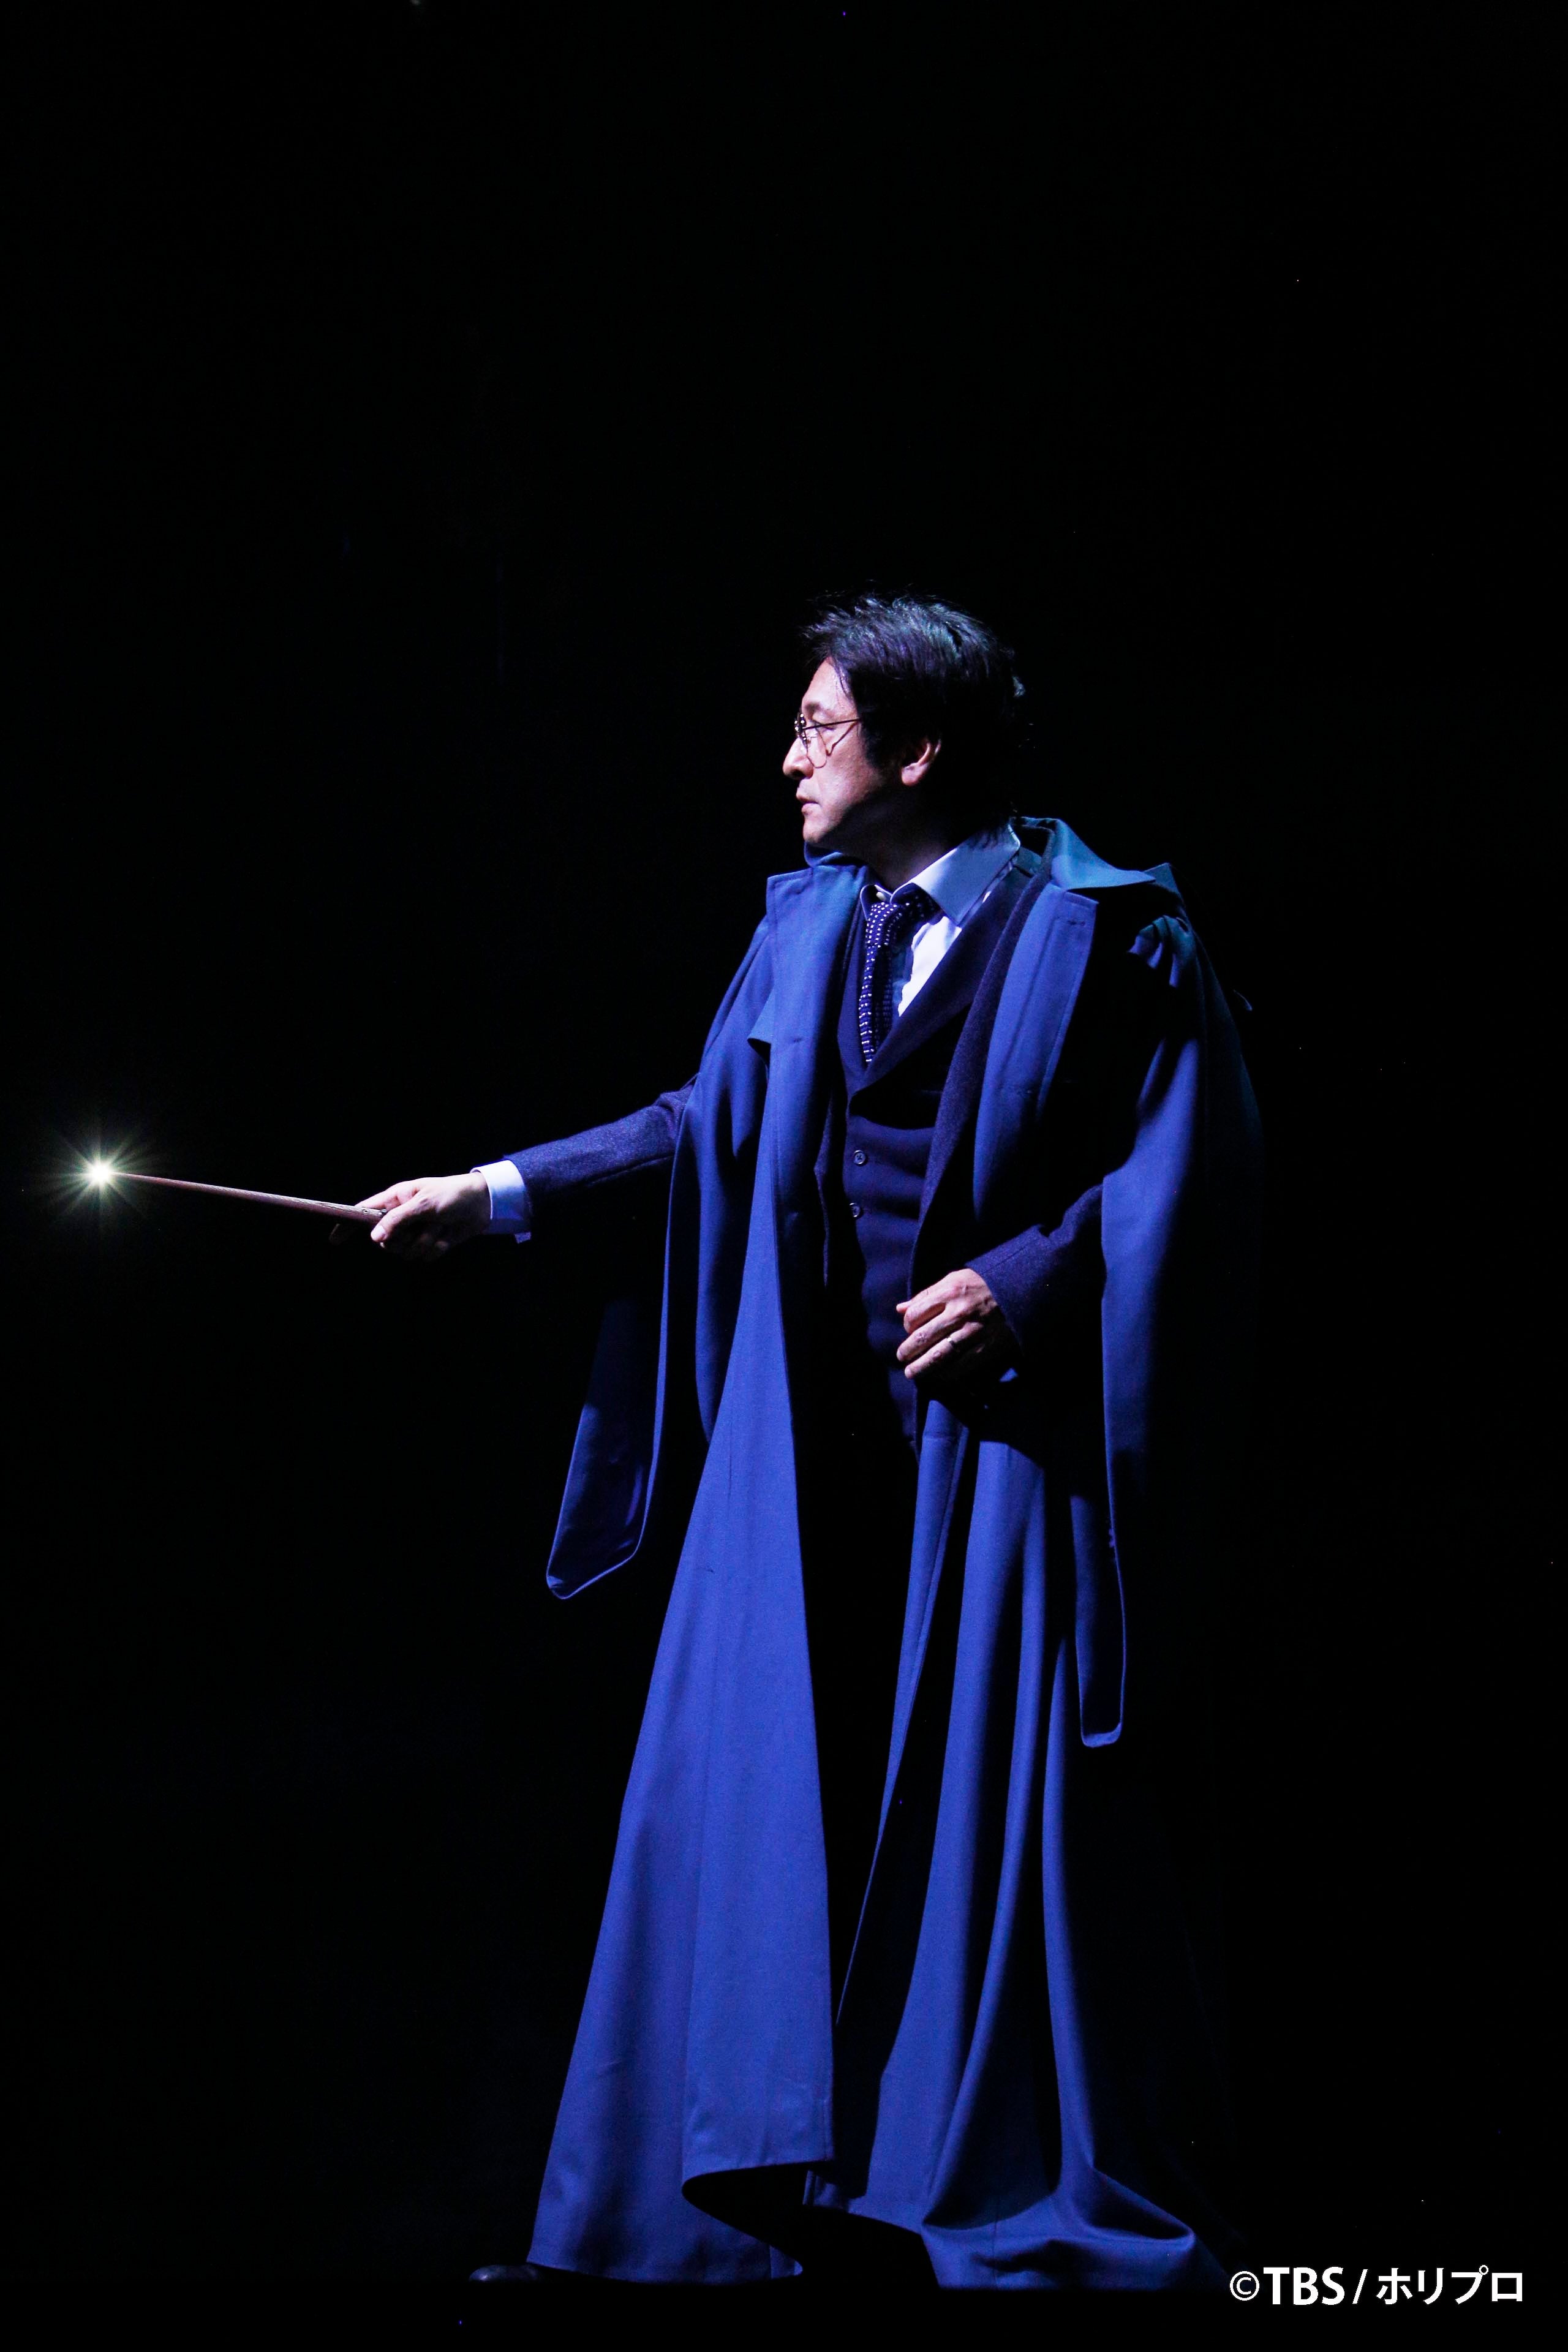 舞台『ハリー・ポッターと呪いの子』東京公演がついに開幕!3人のハリー